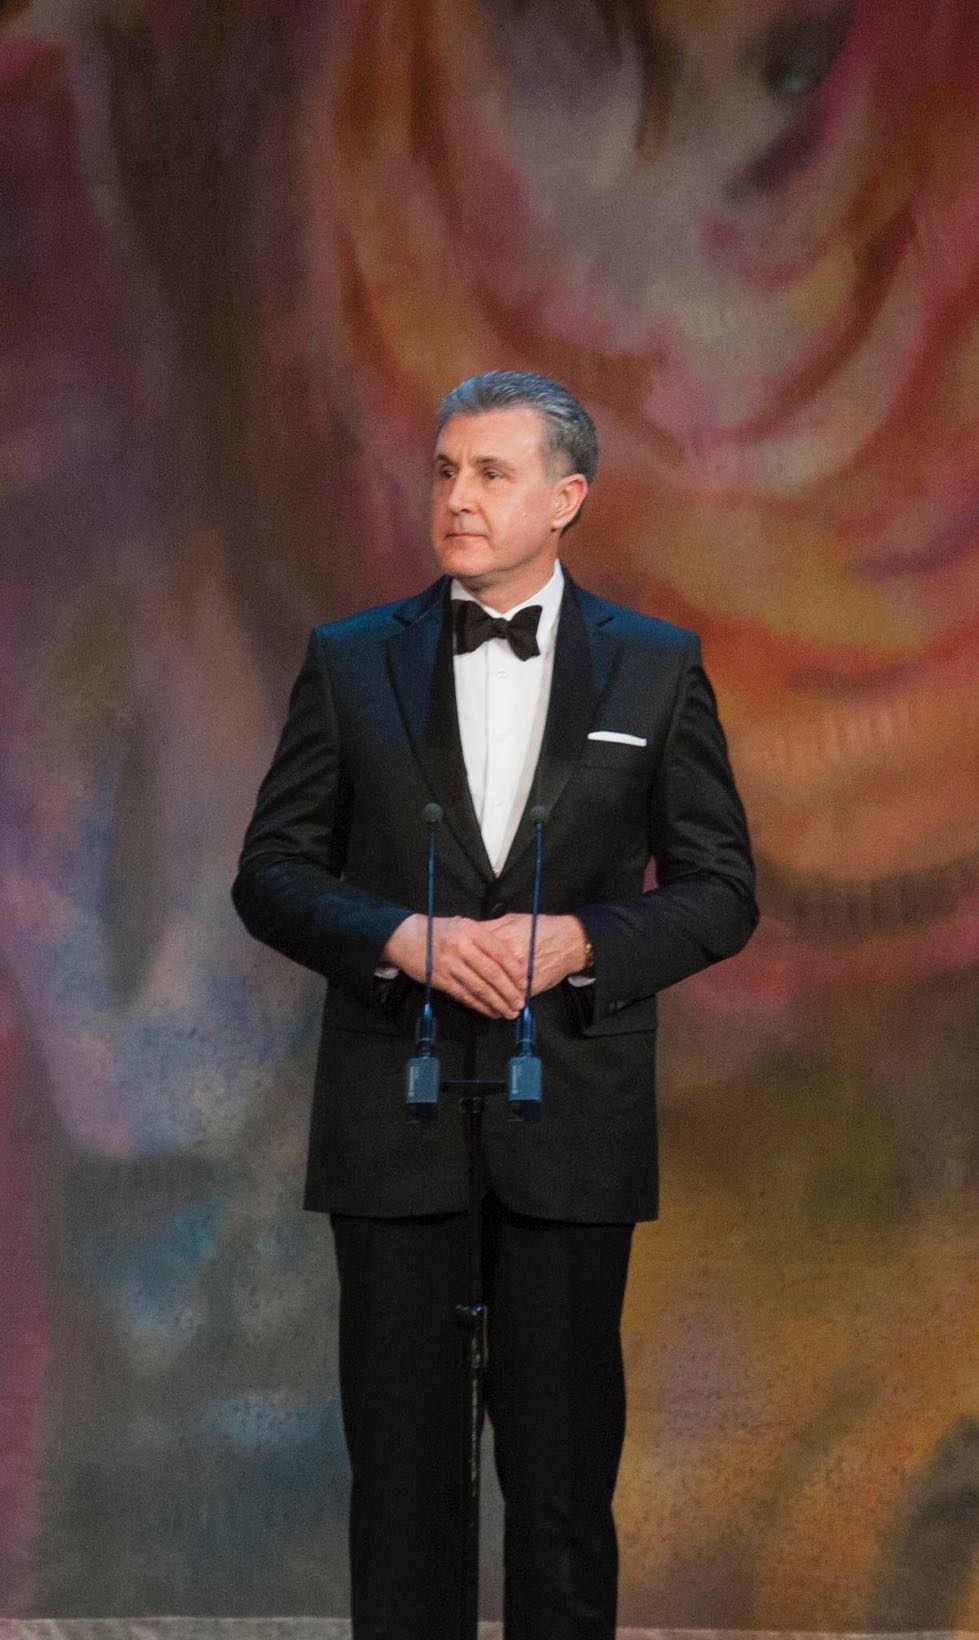 Principele Radu la Gala Operelor Nationale, 19 decembrie 2016, Bucuresti ©Daniel Angelescu